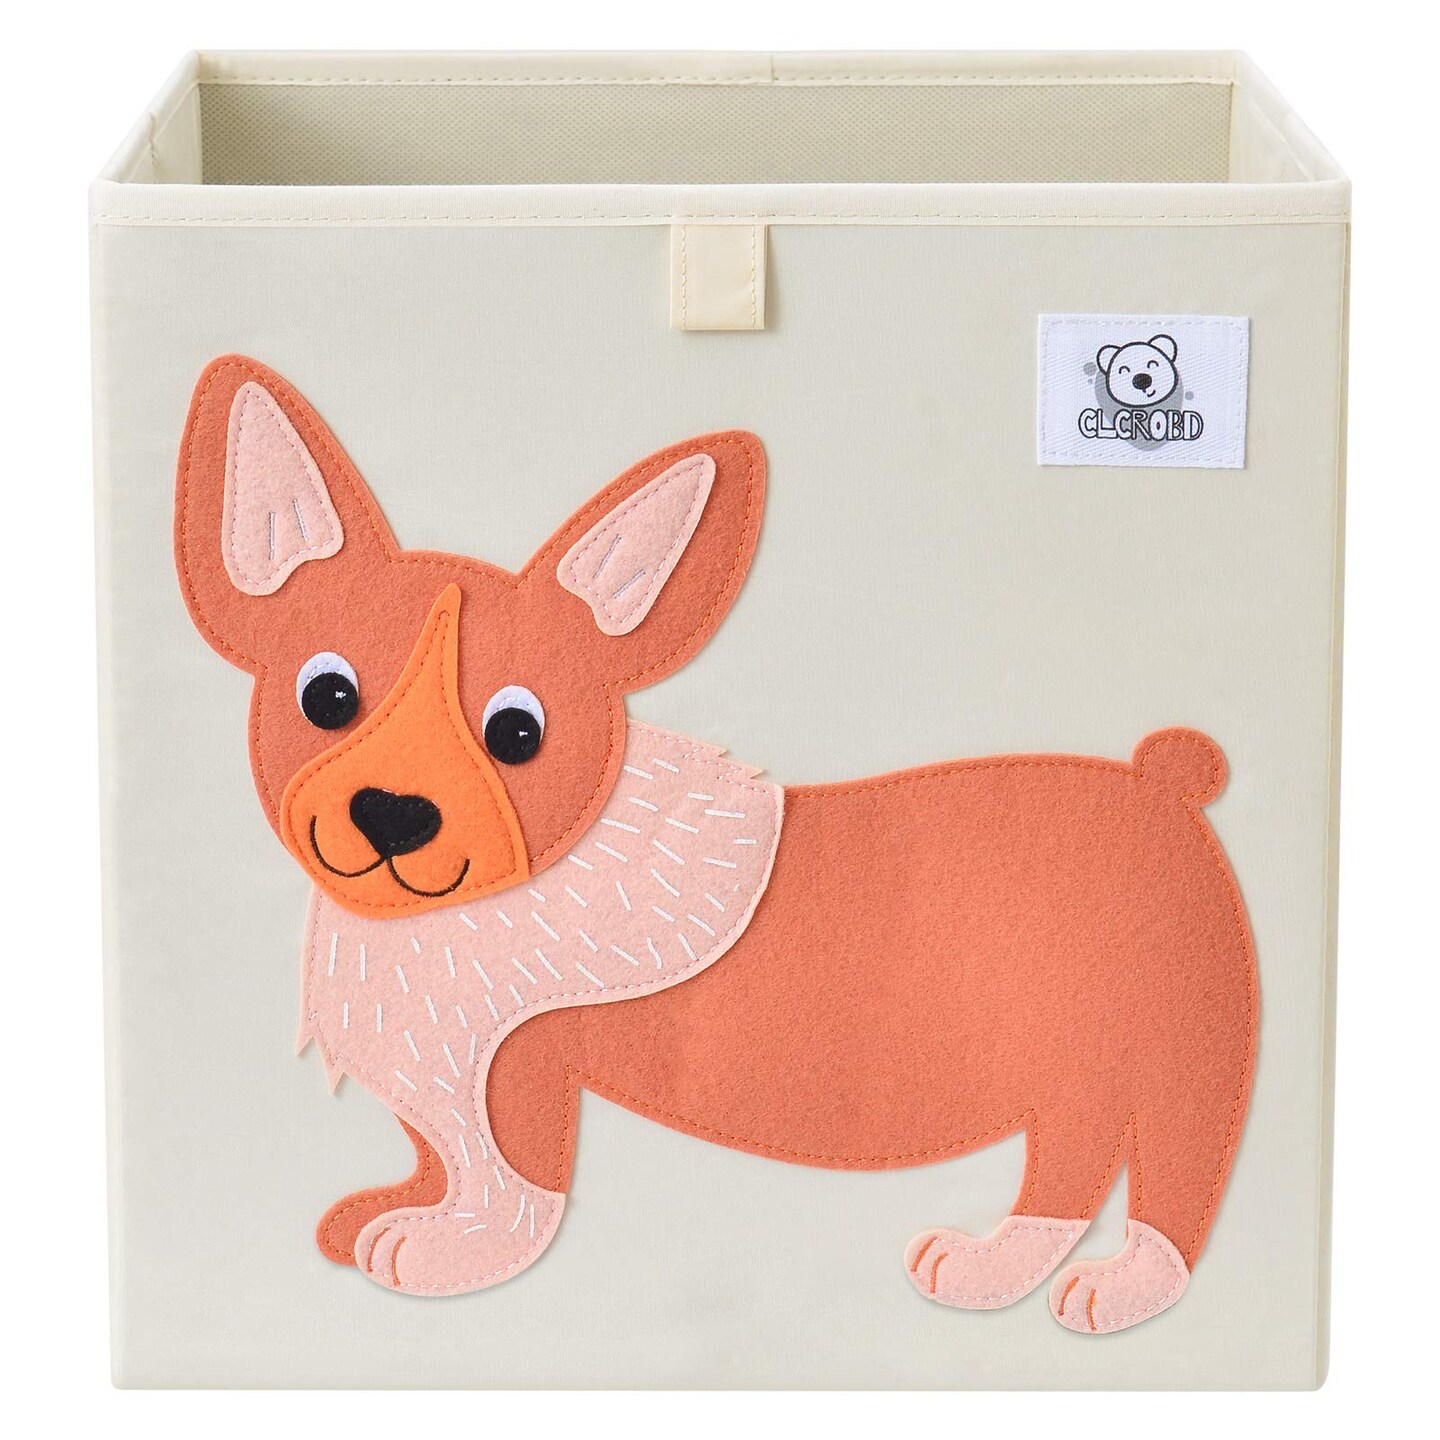 CLCROBD Foldable Animal Cube Storage Bins Fabric Toy Box/Chest/Organizer for Toddler/Kids Nursery, Playroom, 13 inch (Dog)